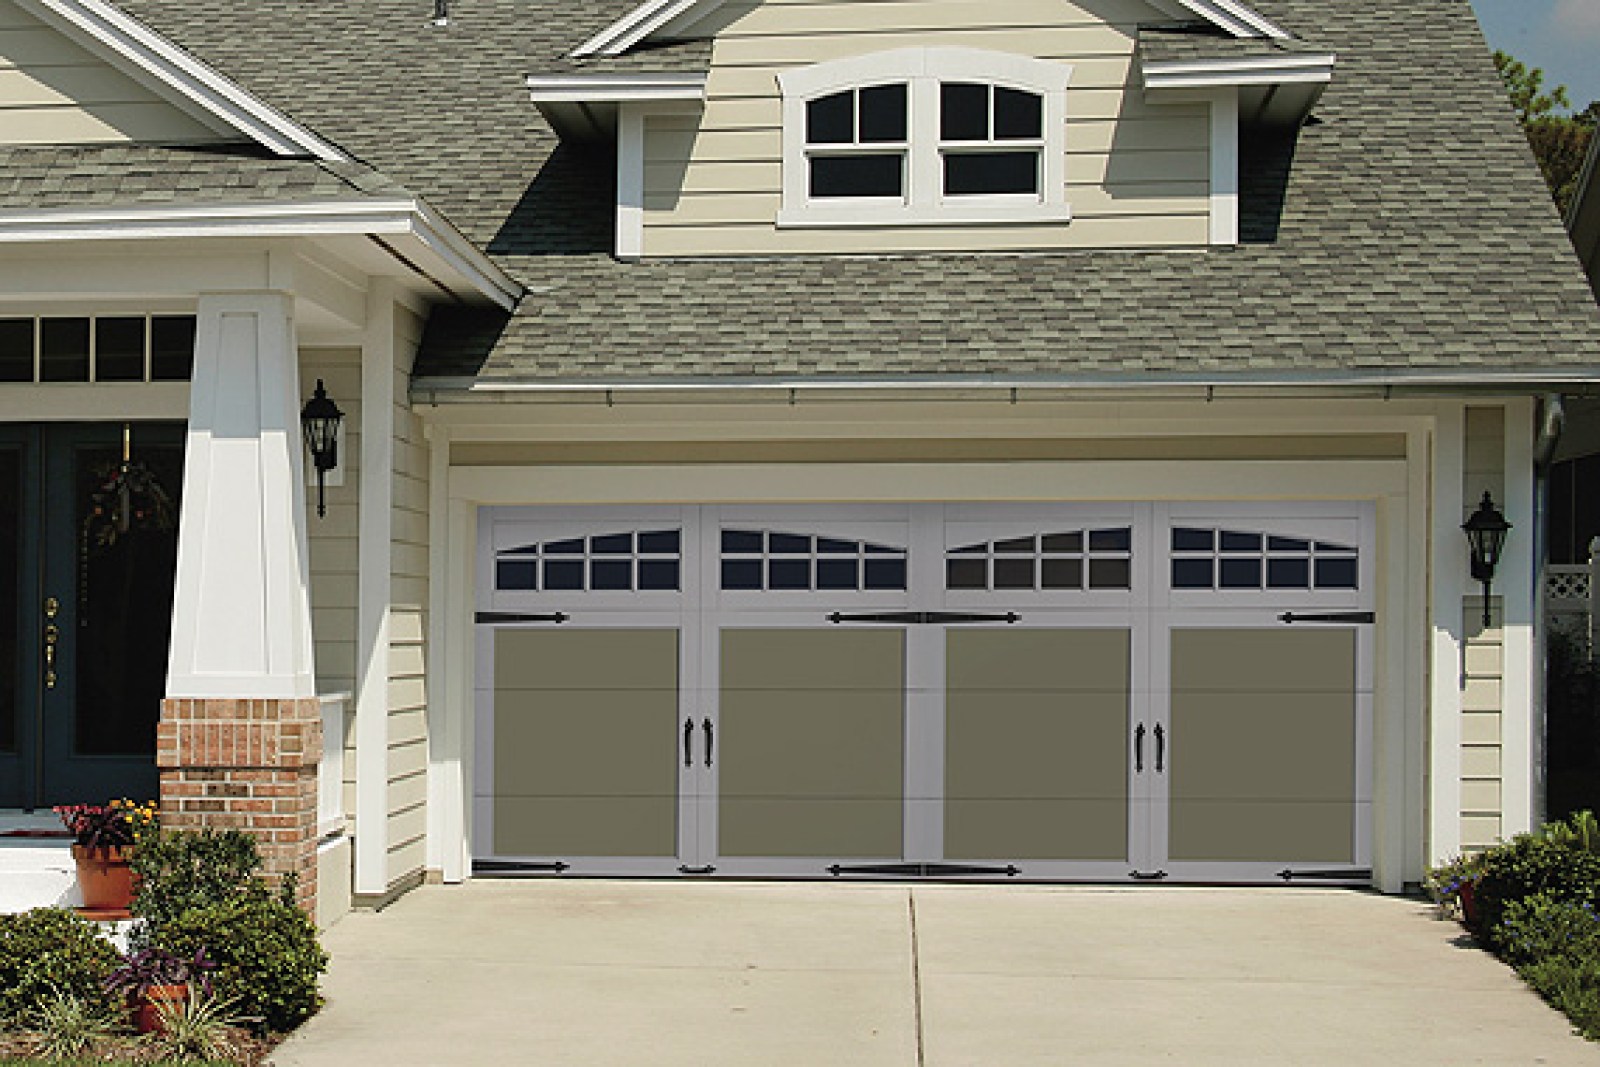 Types Of Garage Doors Garage Door Options Garage Doors